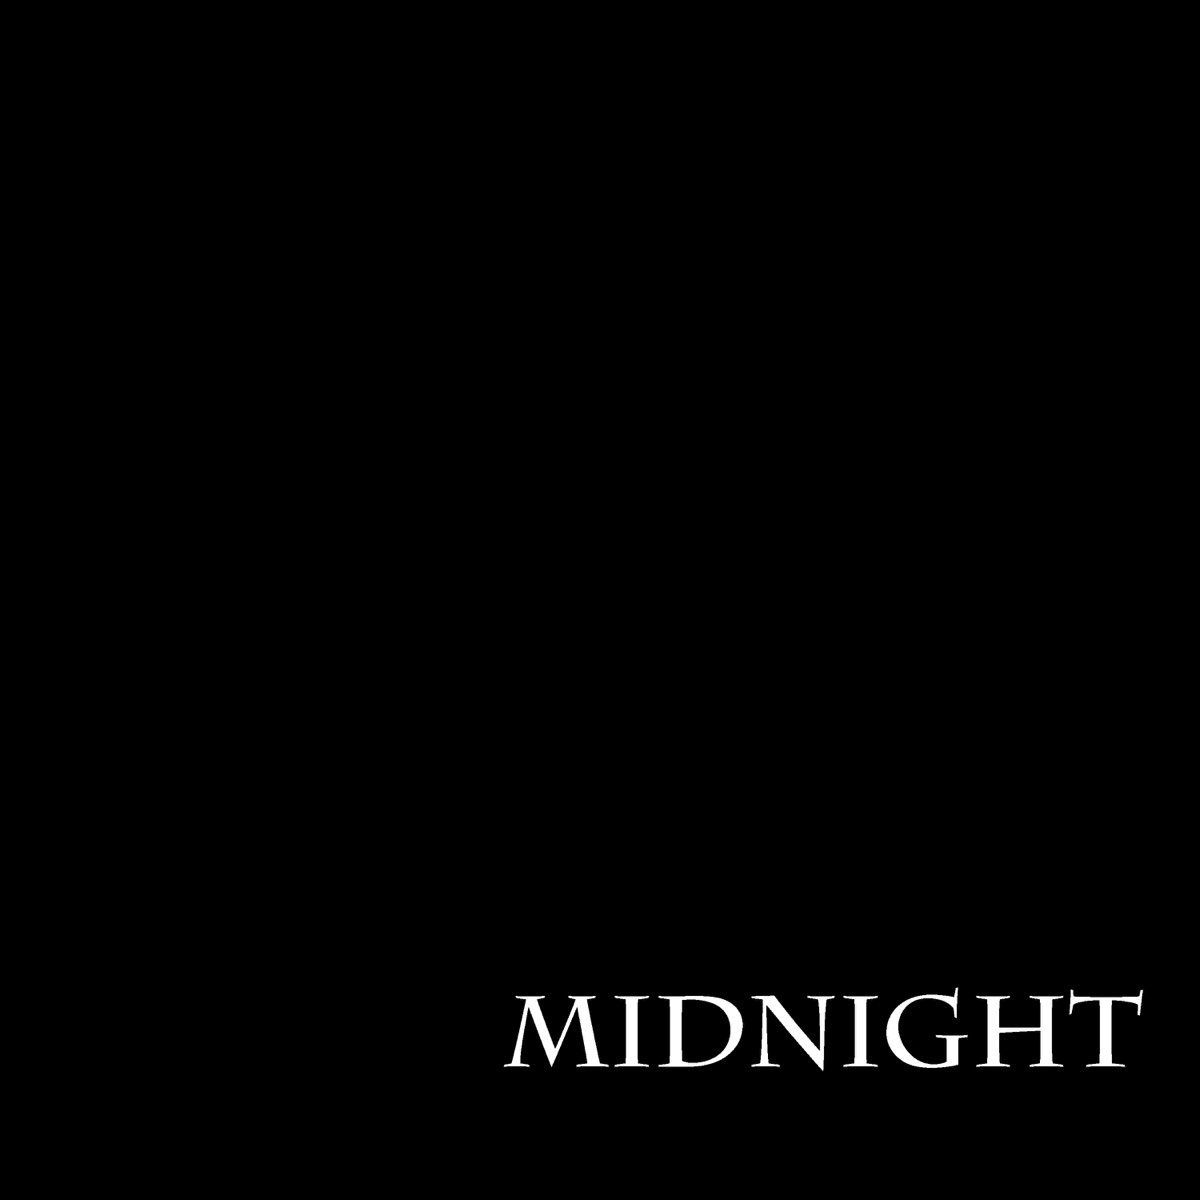 Midnights album. Миднайт сквад. Midnight альбом.